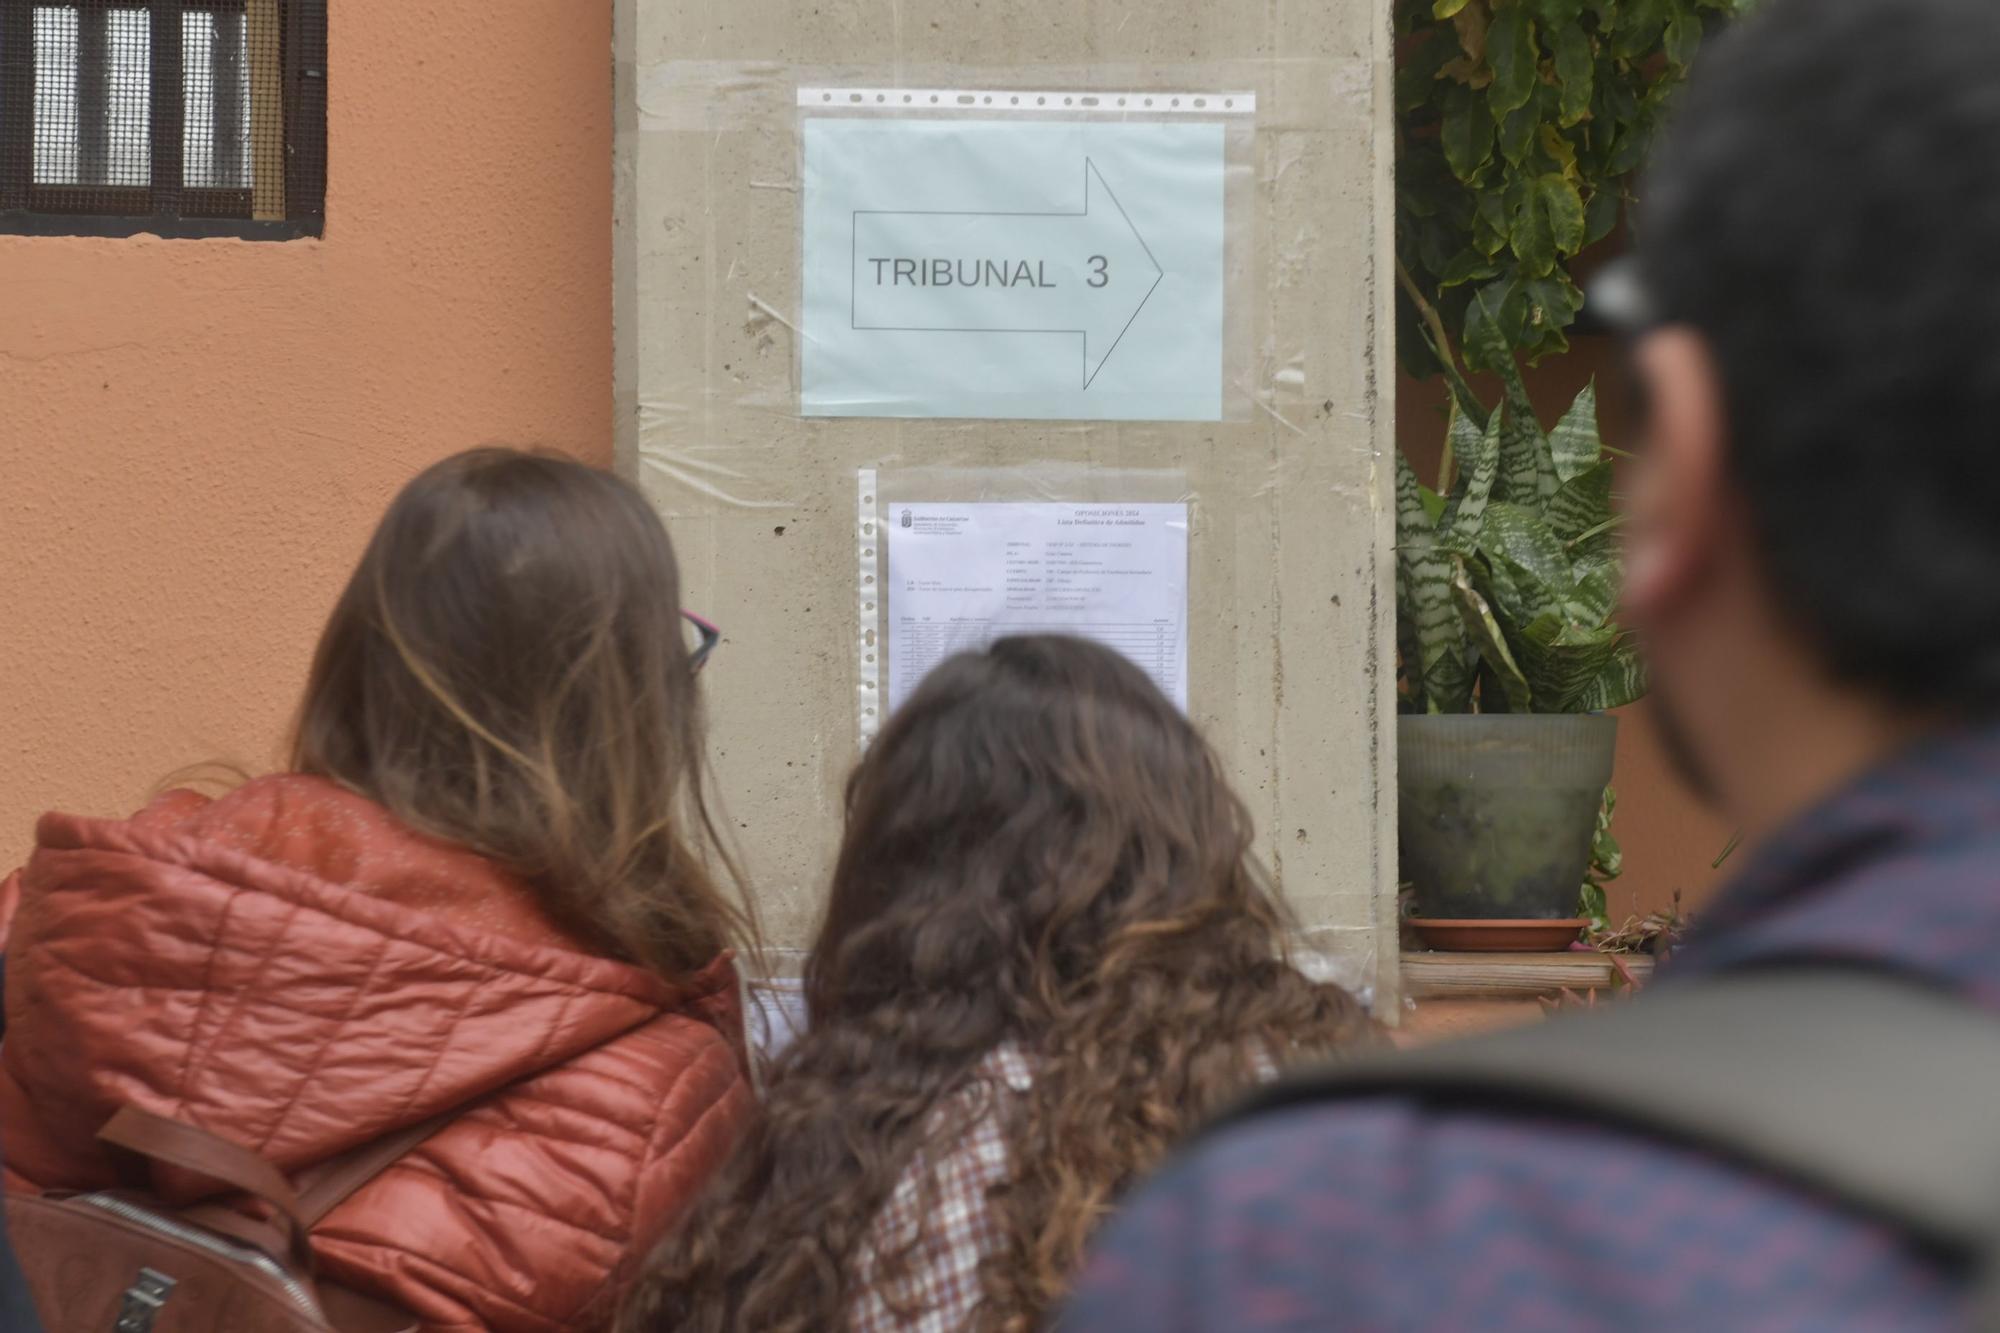 Oposiciones de Educación en el IES La Minilla, en Las Palmas de Gran Canaria. 